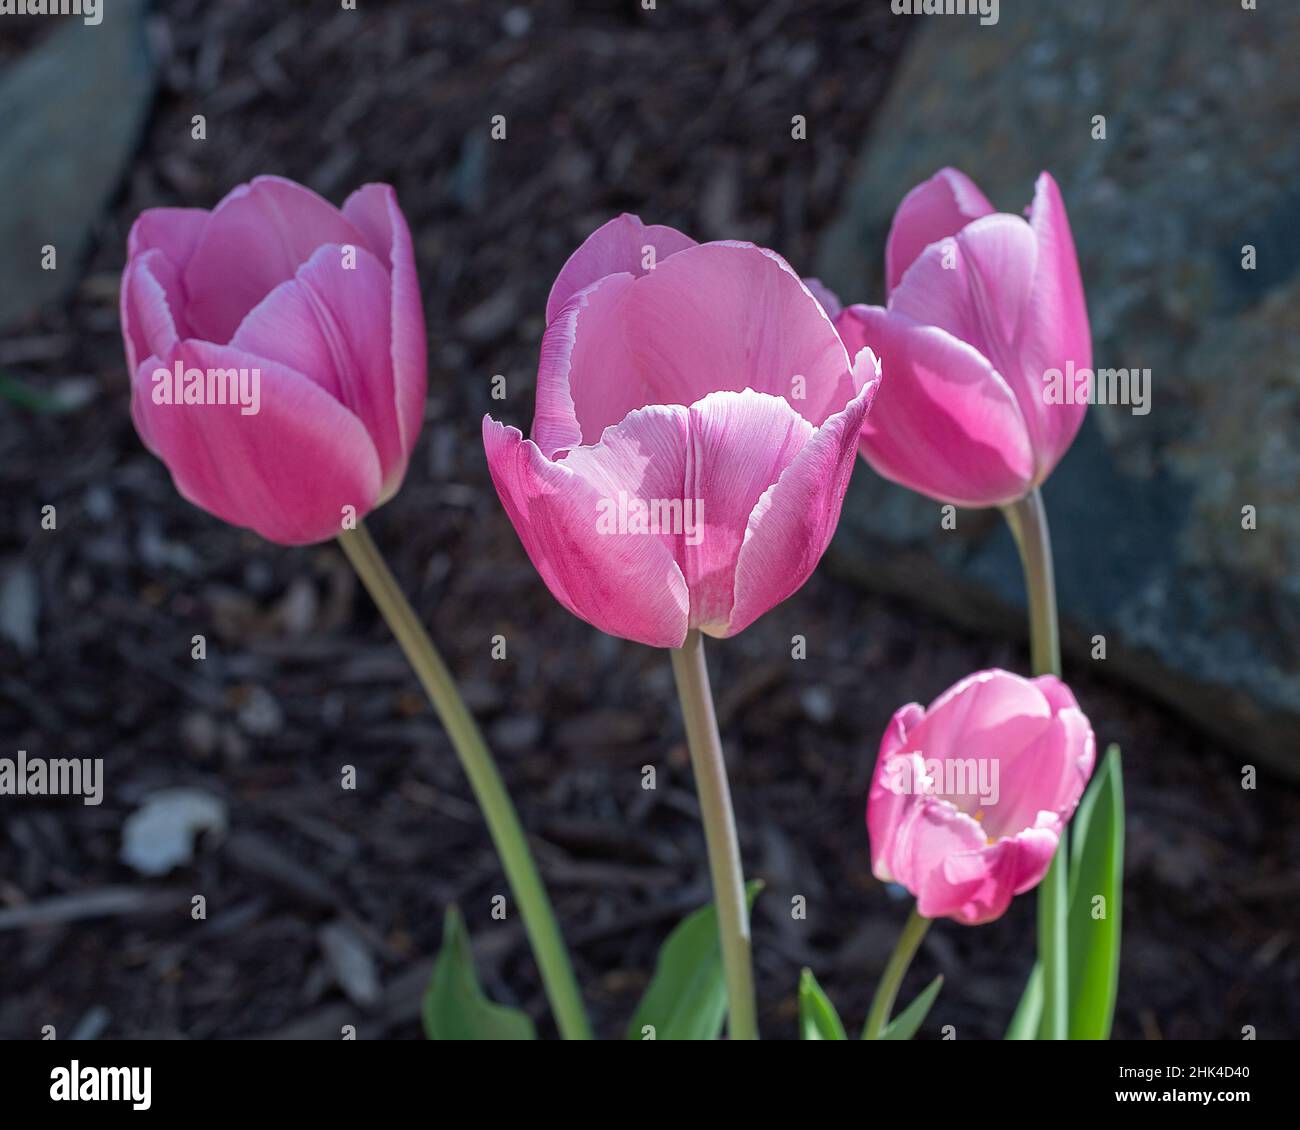 Groupe de quatre tulipes roses dans une belle lumière avec bokeh. Banque D'Images